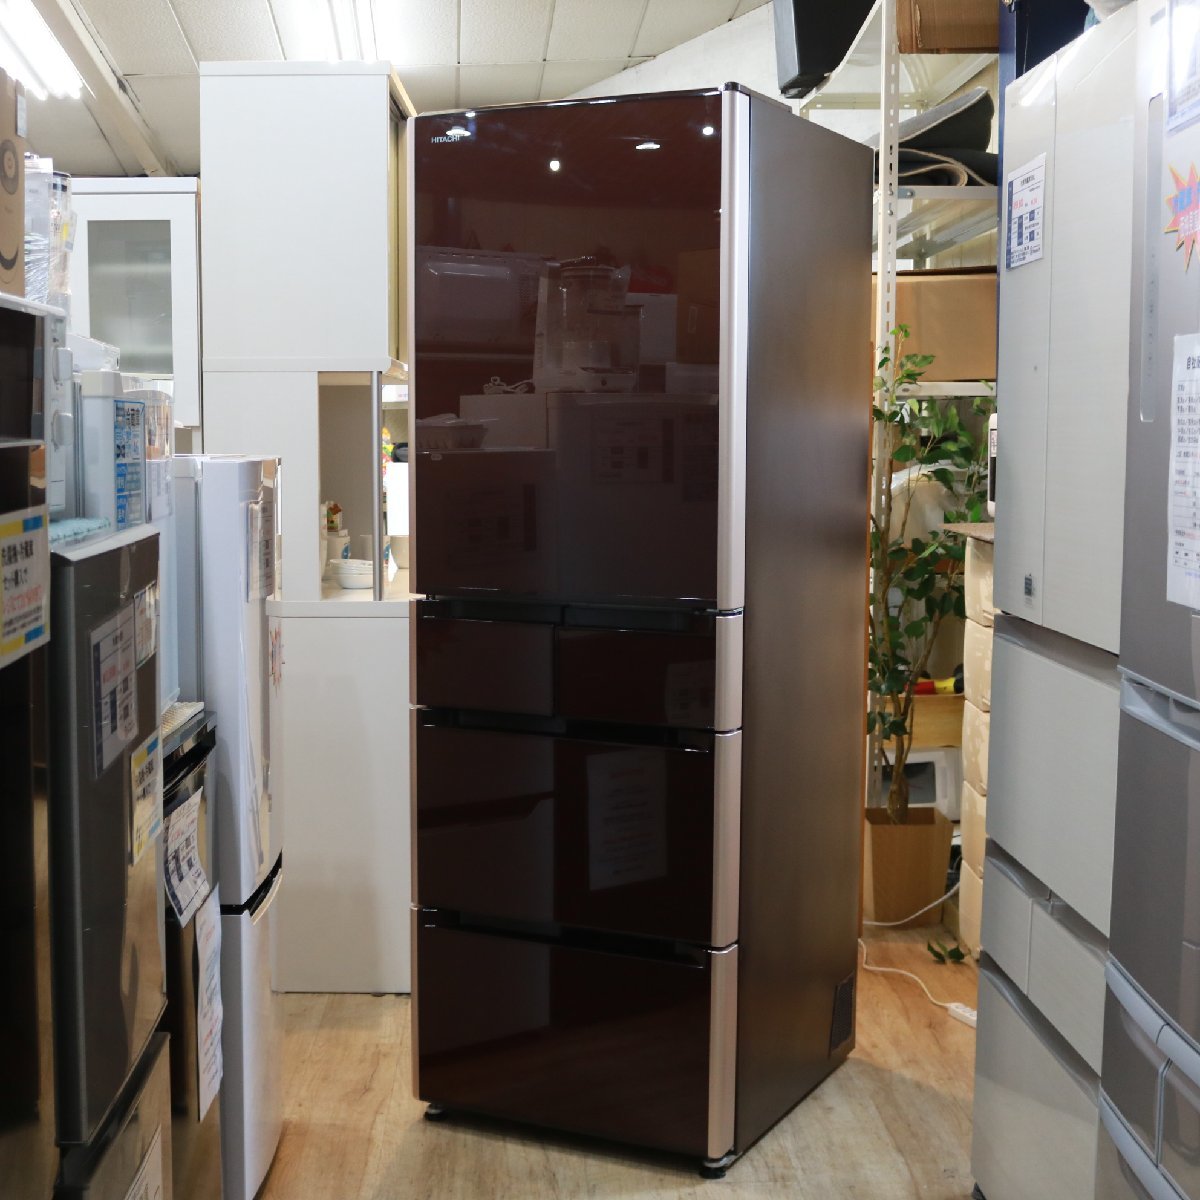 東京都練馬区にて 日立 冷蔵庫 R-S5000G 2017年製 を出張買取させて頂きました。